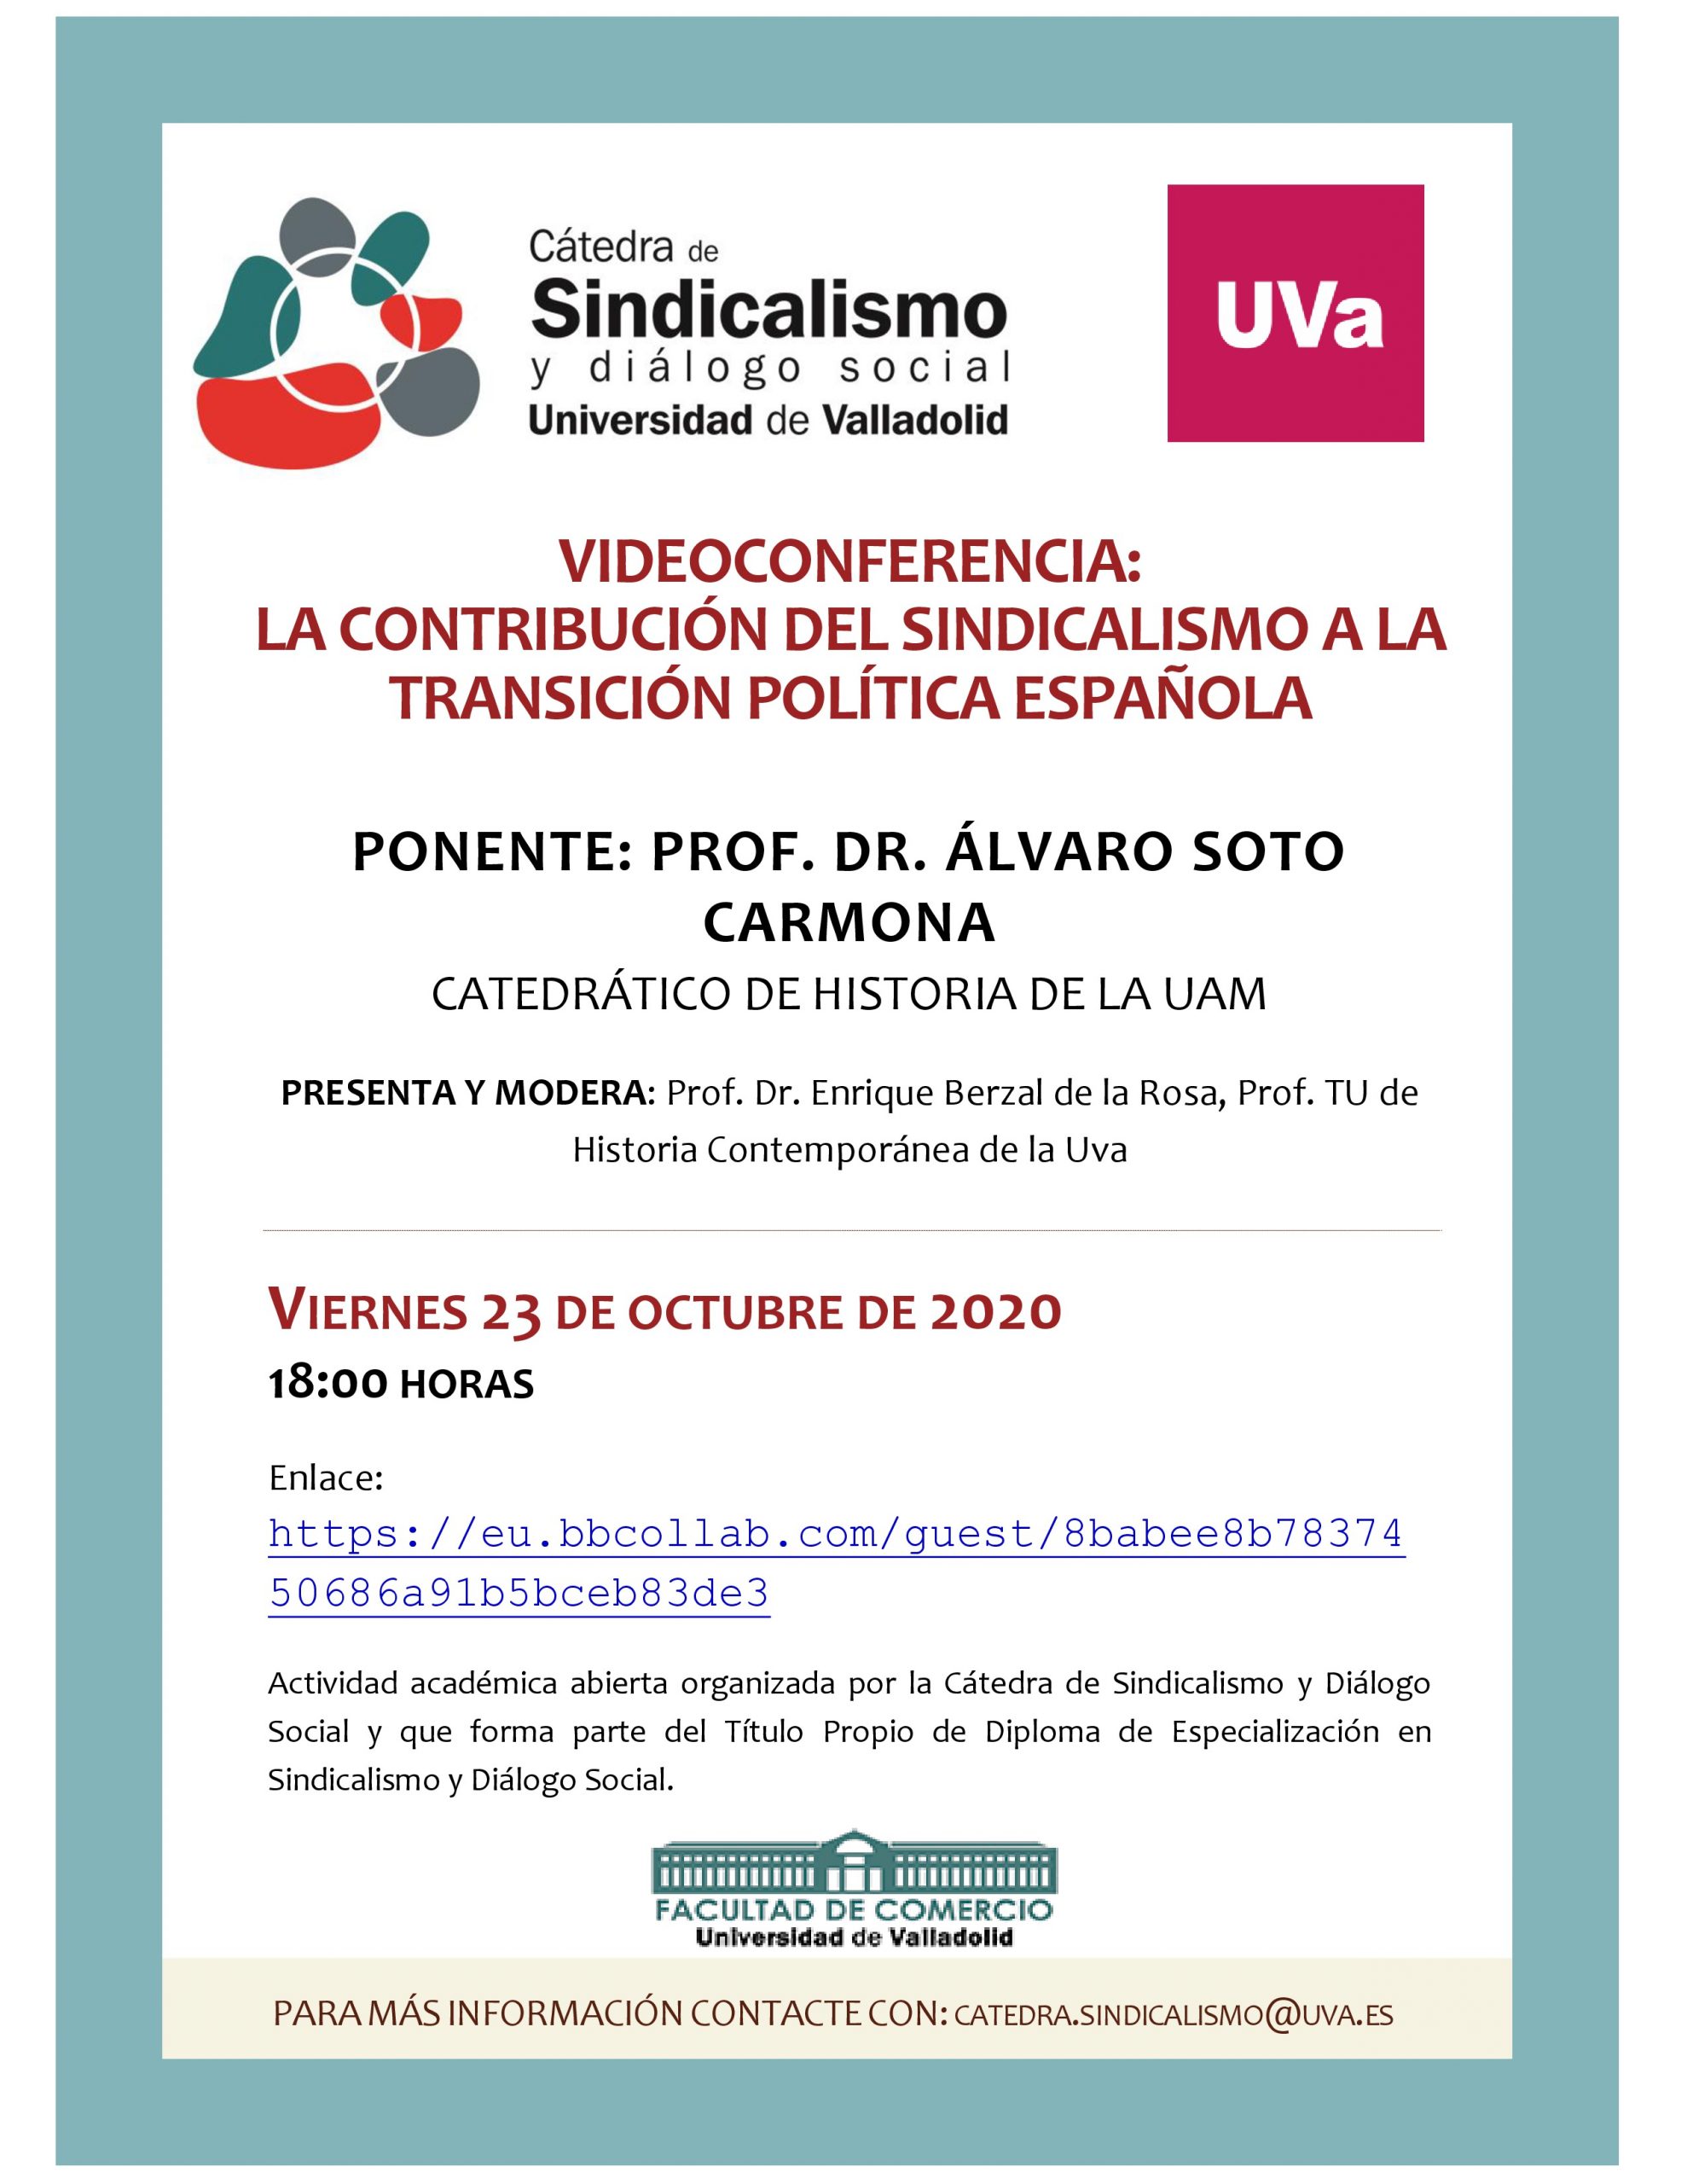 Videoconferencia: la contribución del Sindicalismo a la transición política española